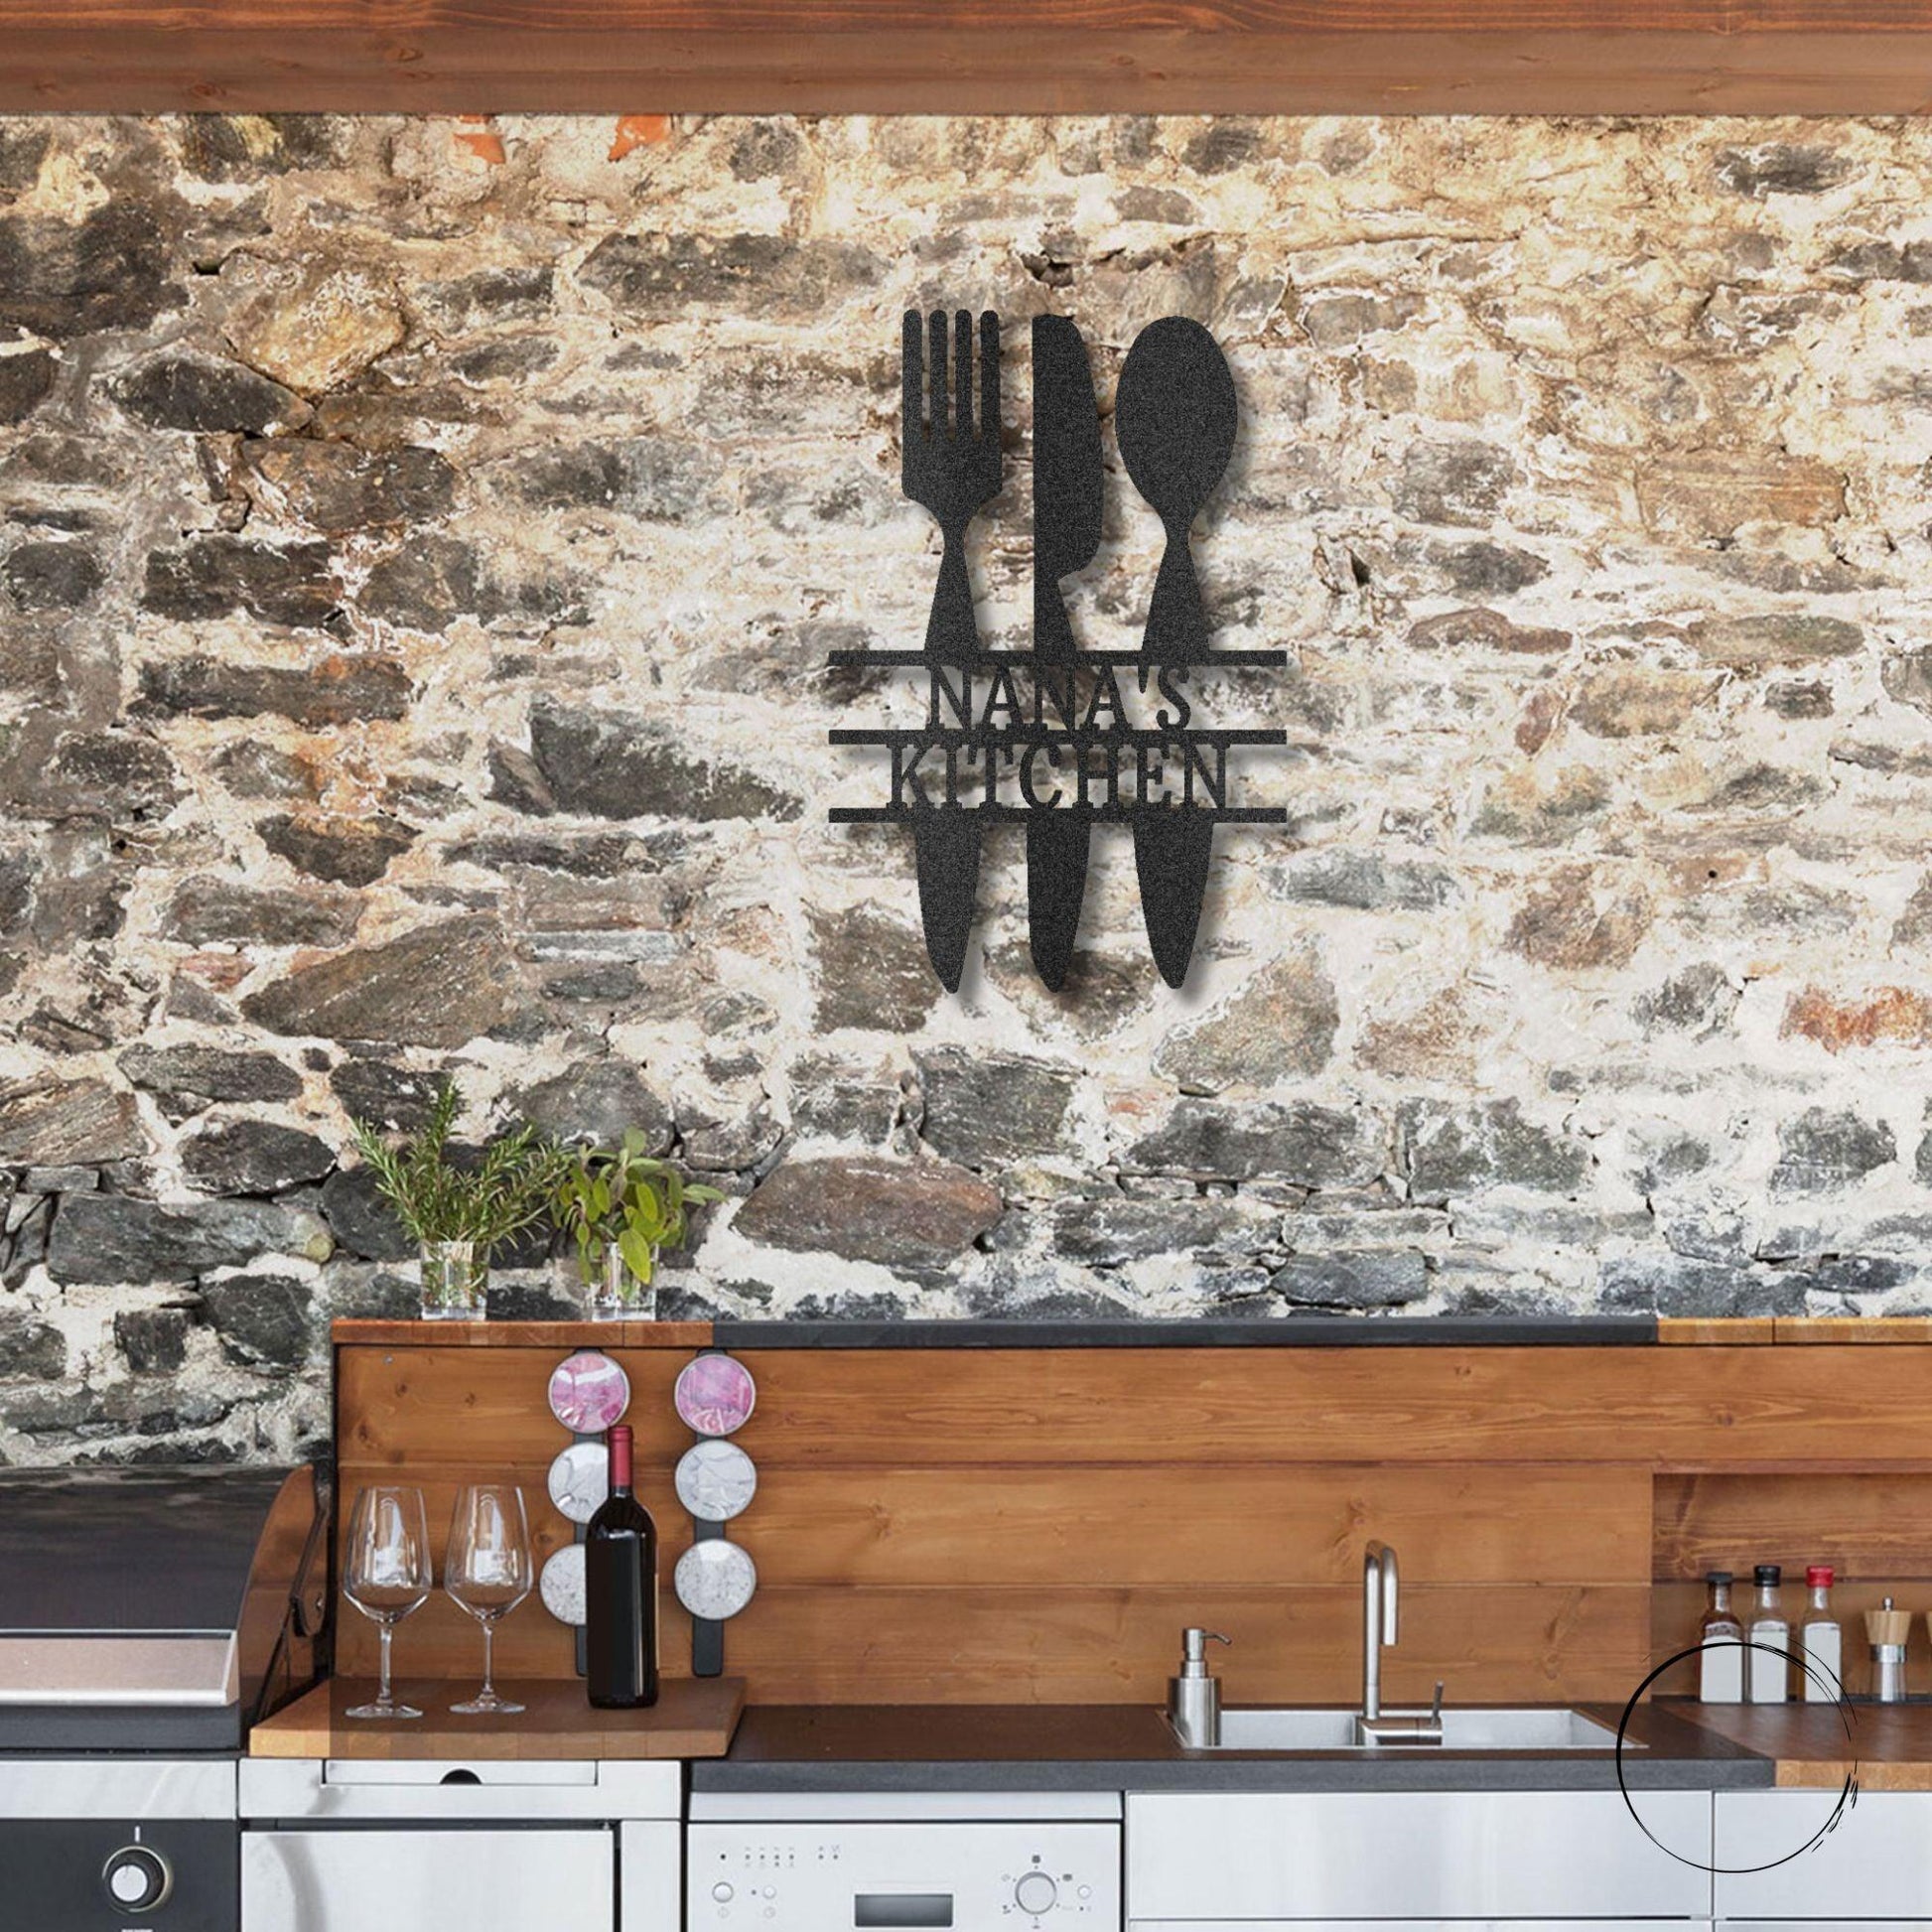 Kitchen Utensil Monogram Personalized Indoor Outdoor Steel Wall Sign Art - Mallard Moon Gift Shop